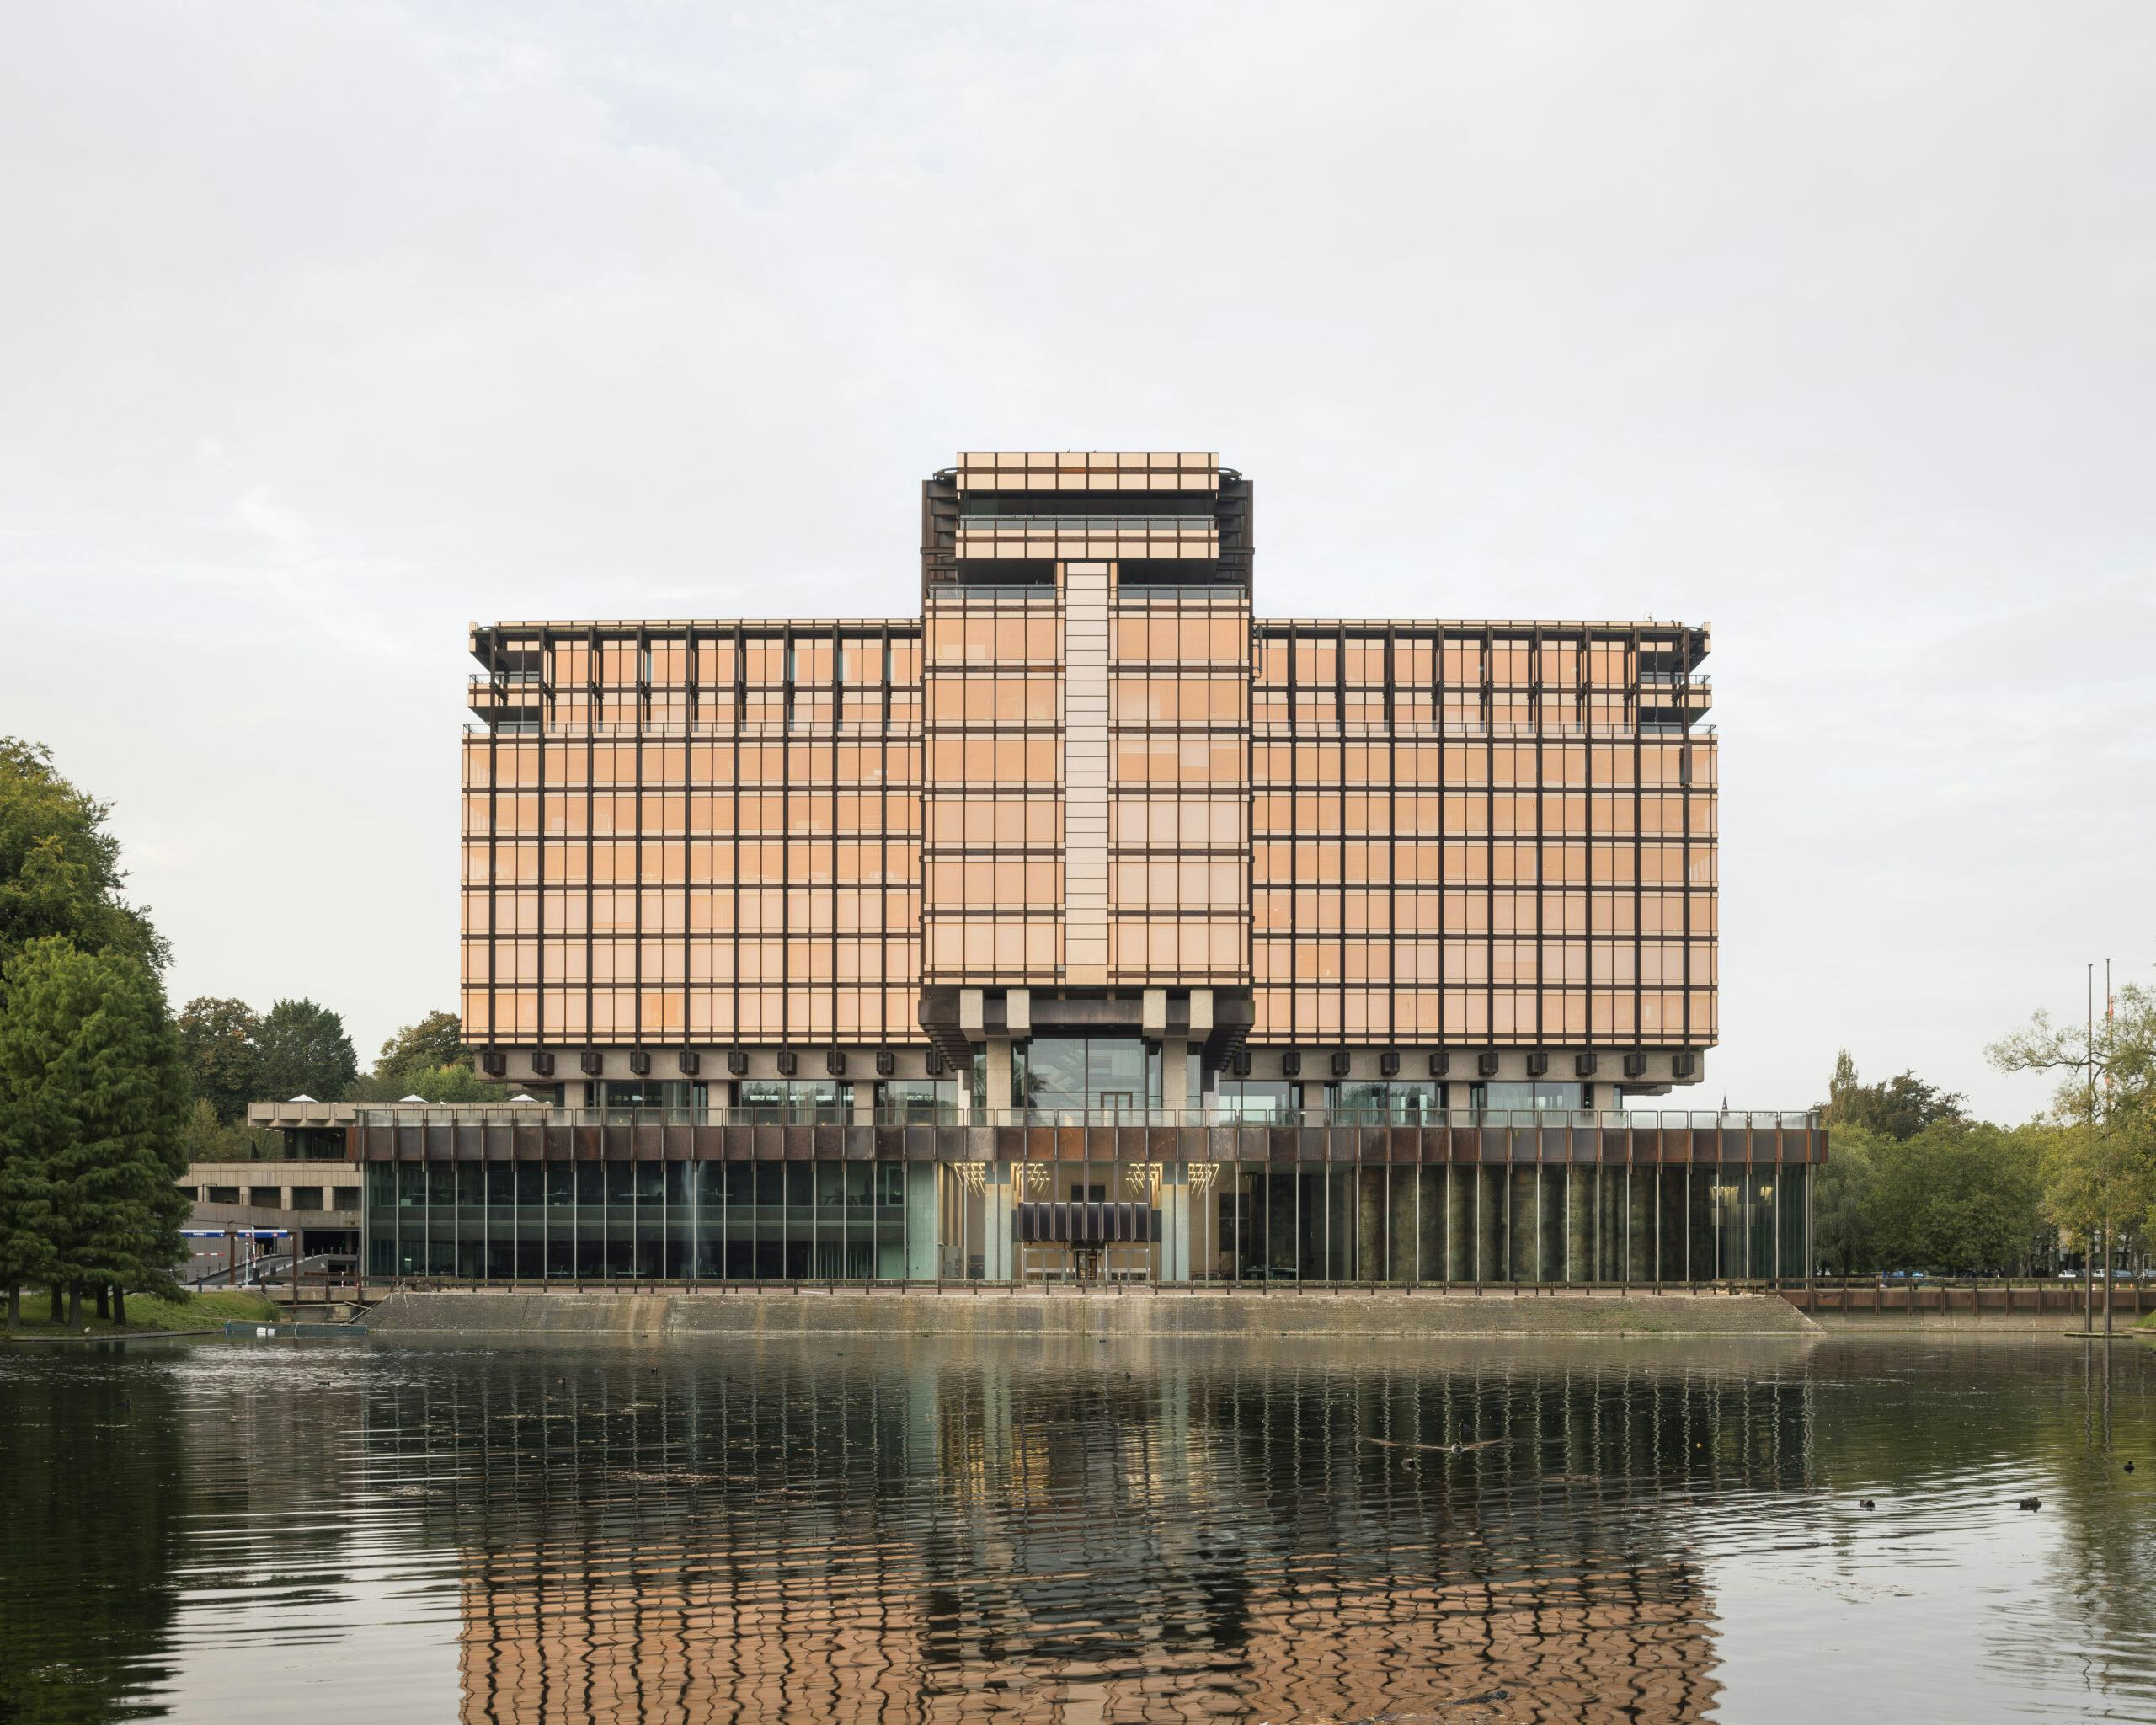 ARC24: Herbestemming voormalig hoofdkantoor Royale Belge,  Sint-Pieters-Woluwe - Bovenbouw Architectuur